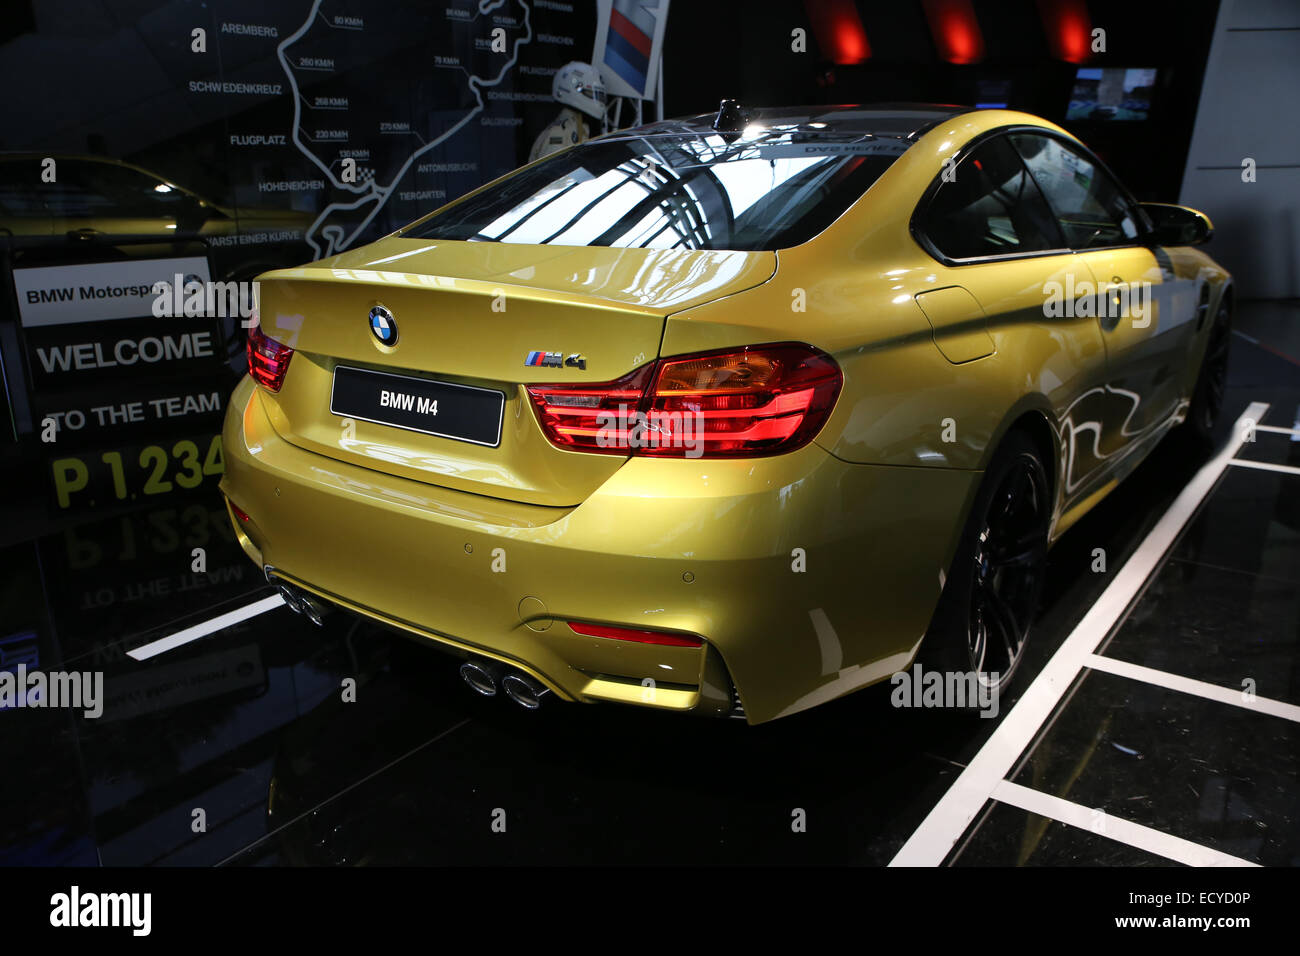 Amarillo sedán BMW M4 trasera Foto de stock